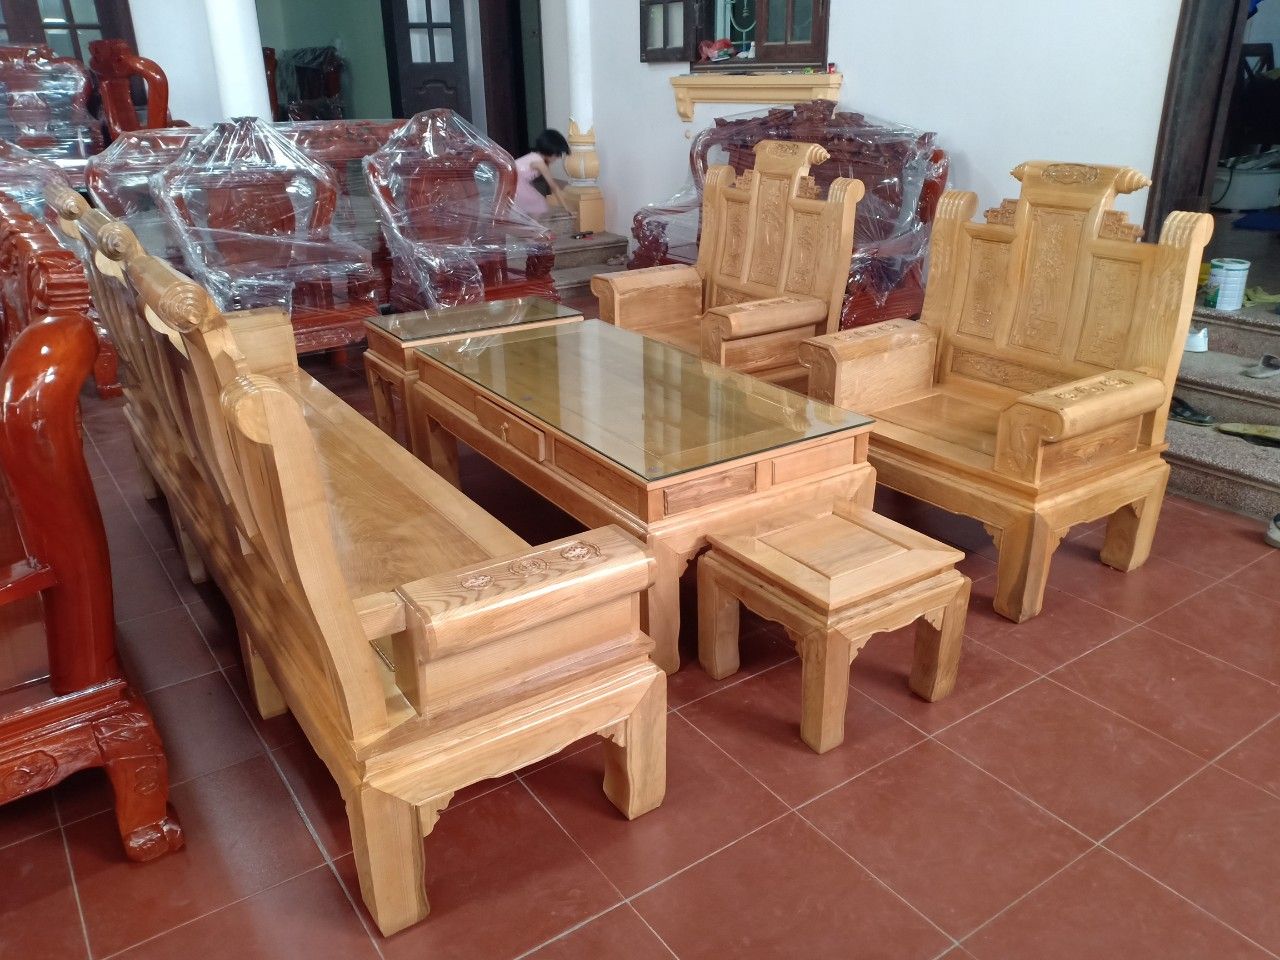 Bộ bàn ghế phòng khách gỗ sồi - Thiết kế tinh tế và độc đáo, là điểm nhấn hoàn hảo cho không gian tiếp khách thân thiện và lịch sự.